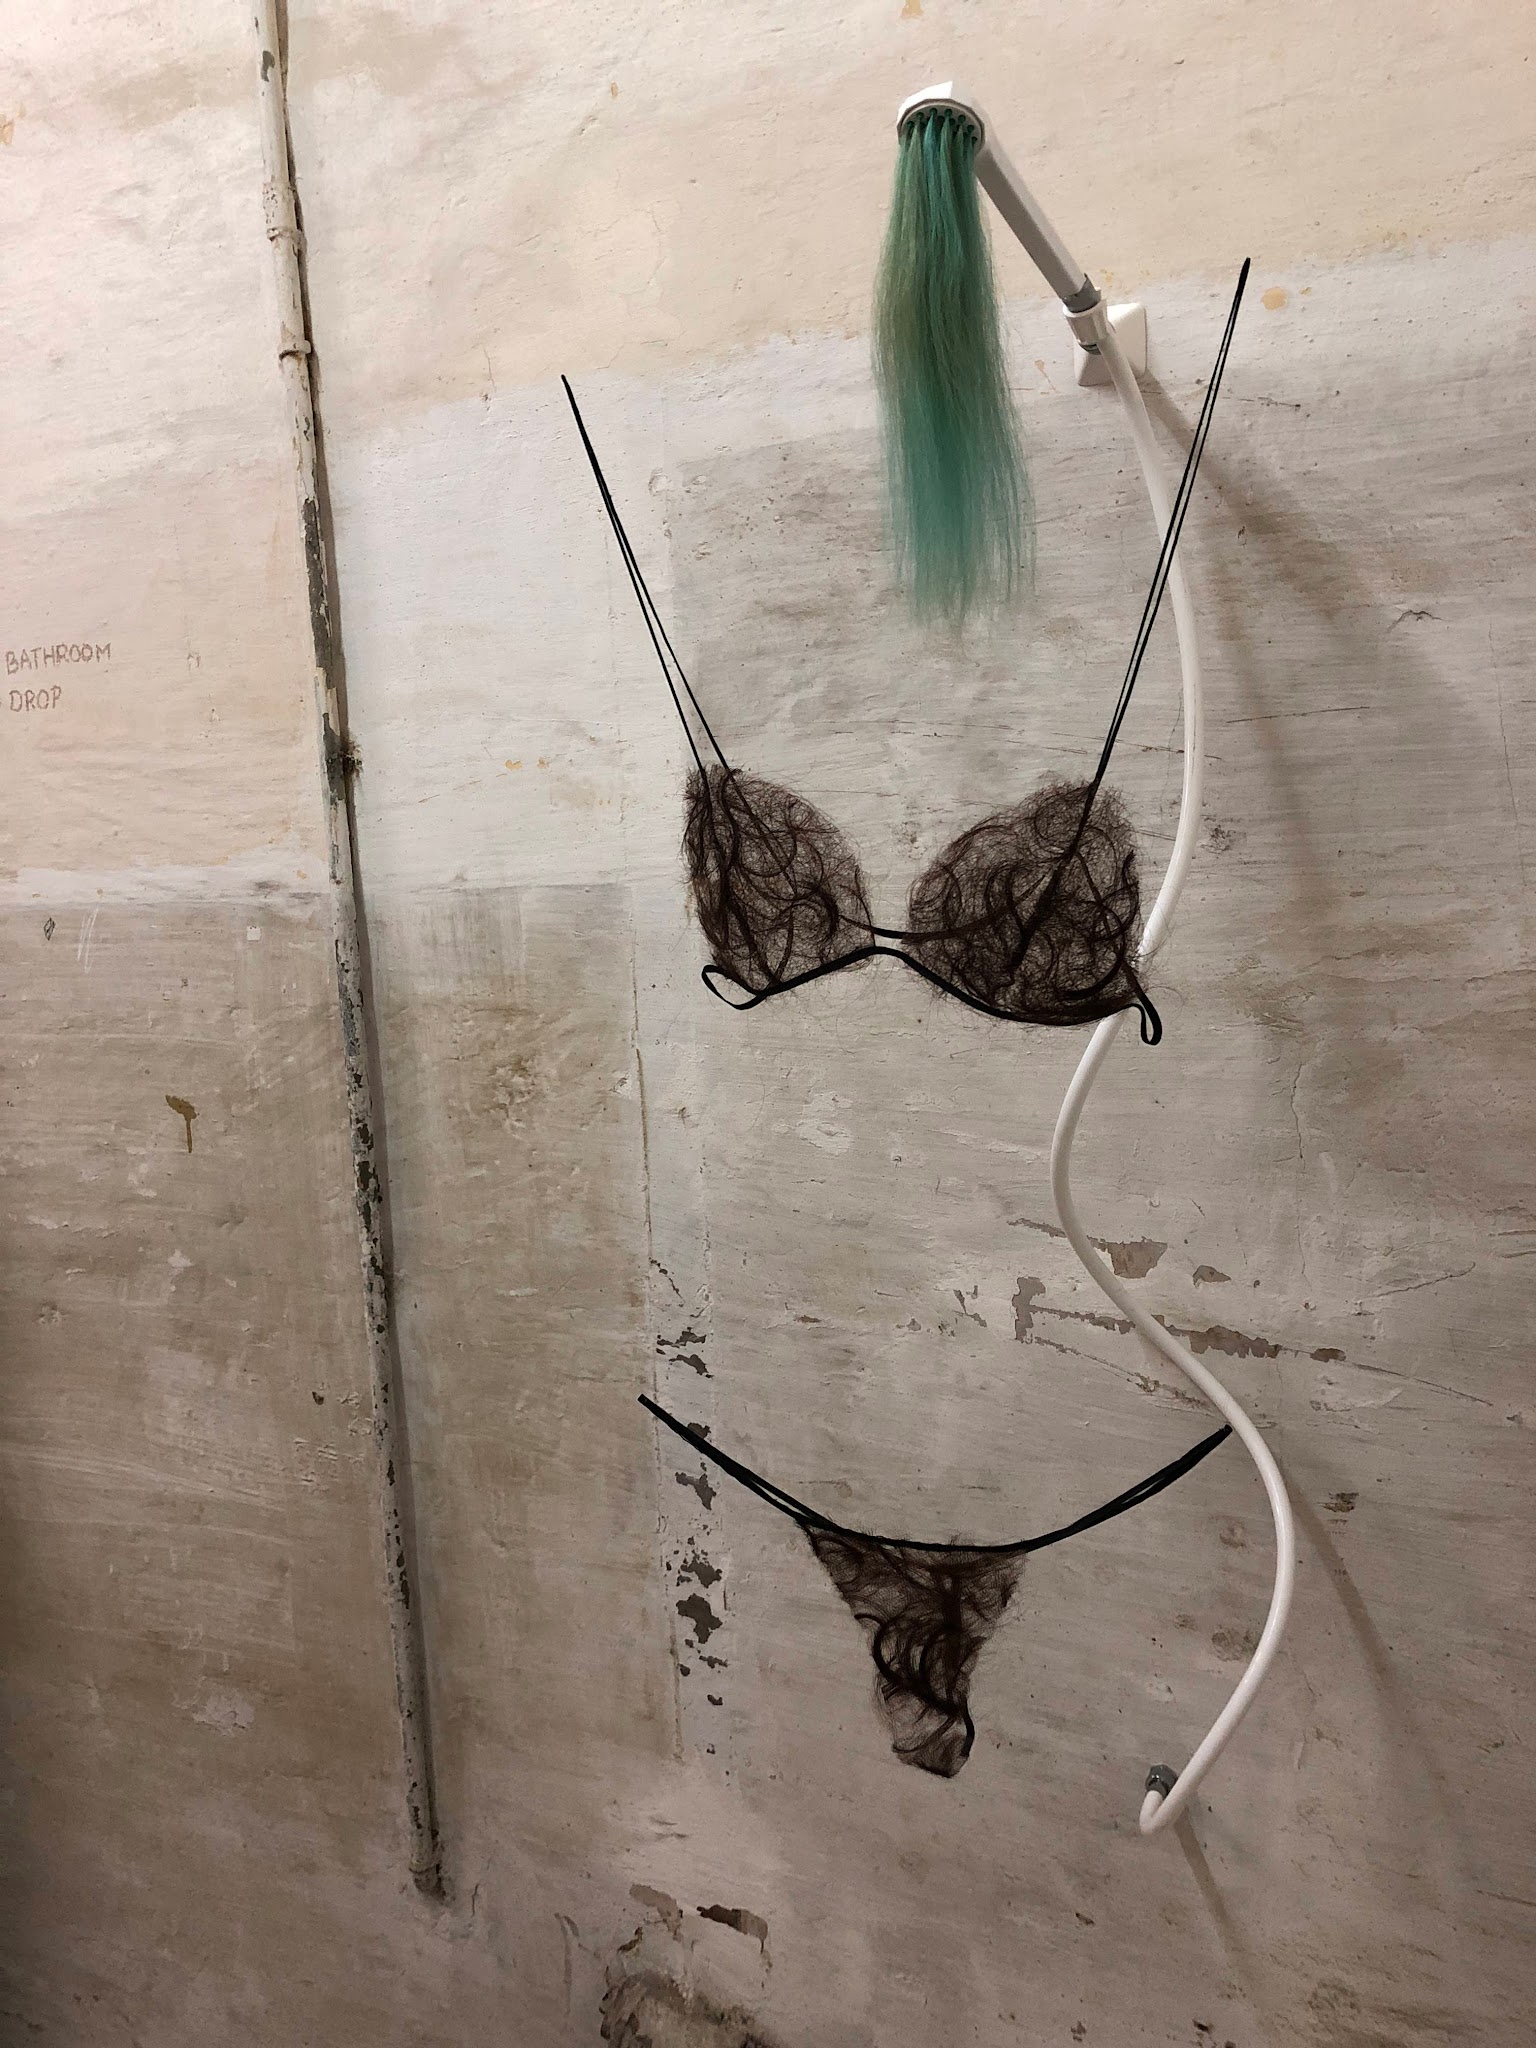 Fotografi av installation med duschmunstycke ur vilket det kommer turkos hår. Under detta hänger en bikini av filtat människohår.